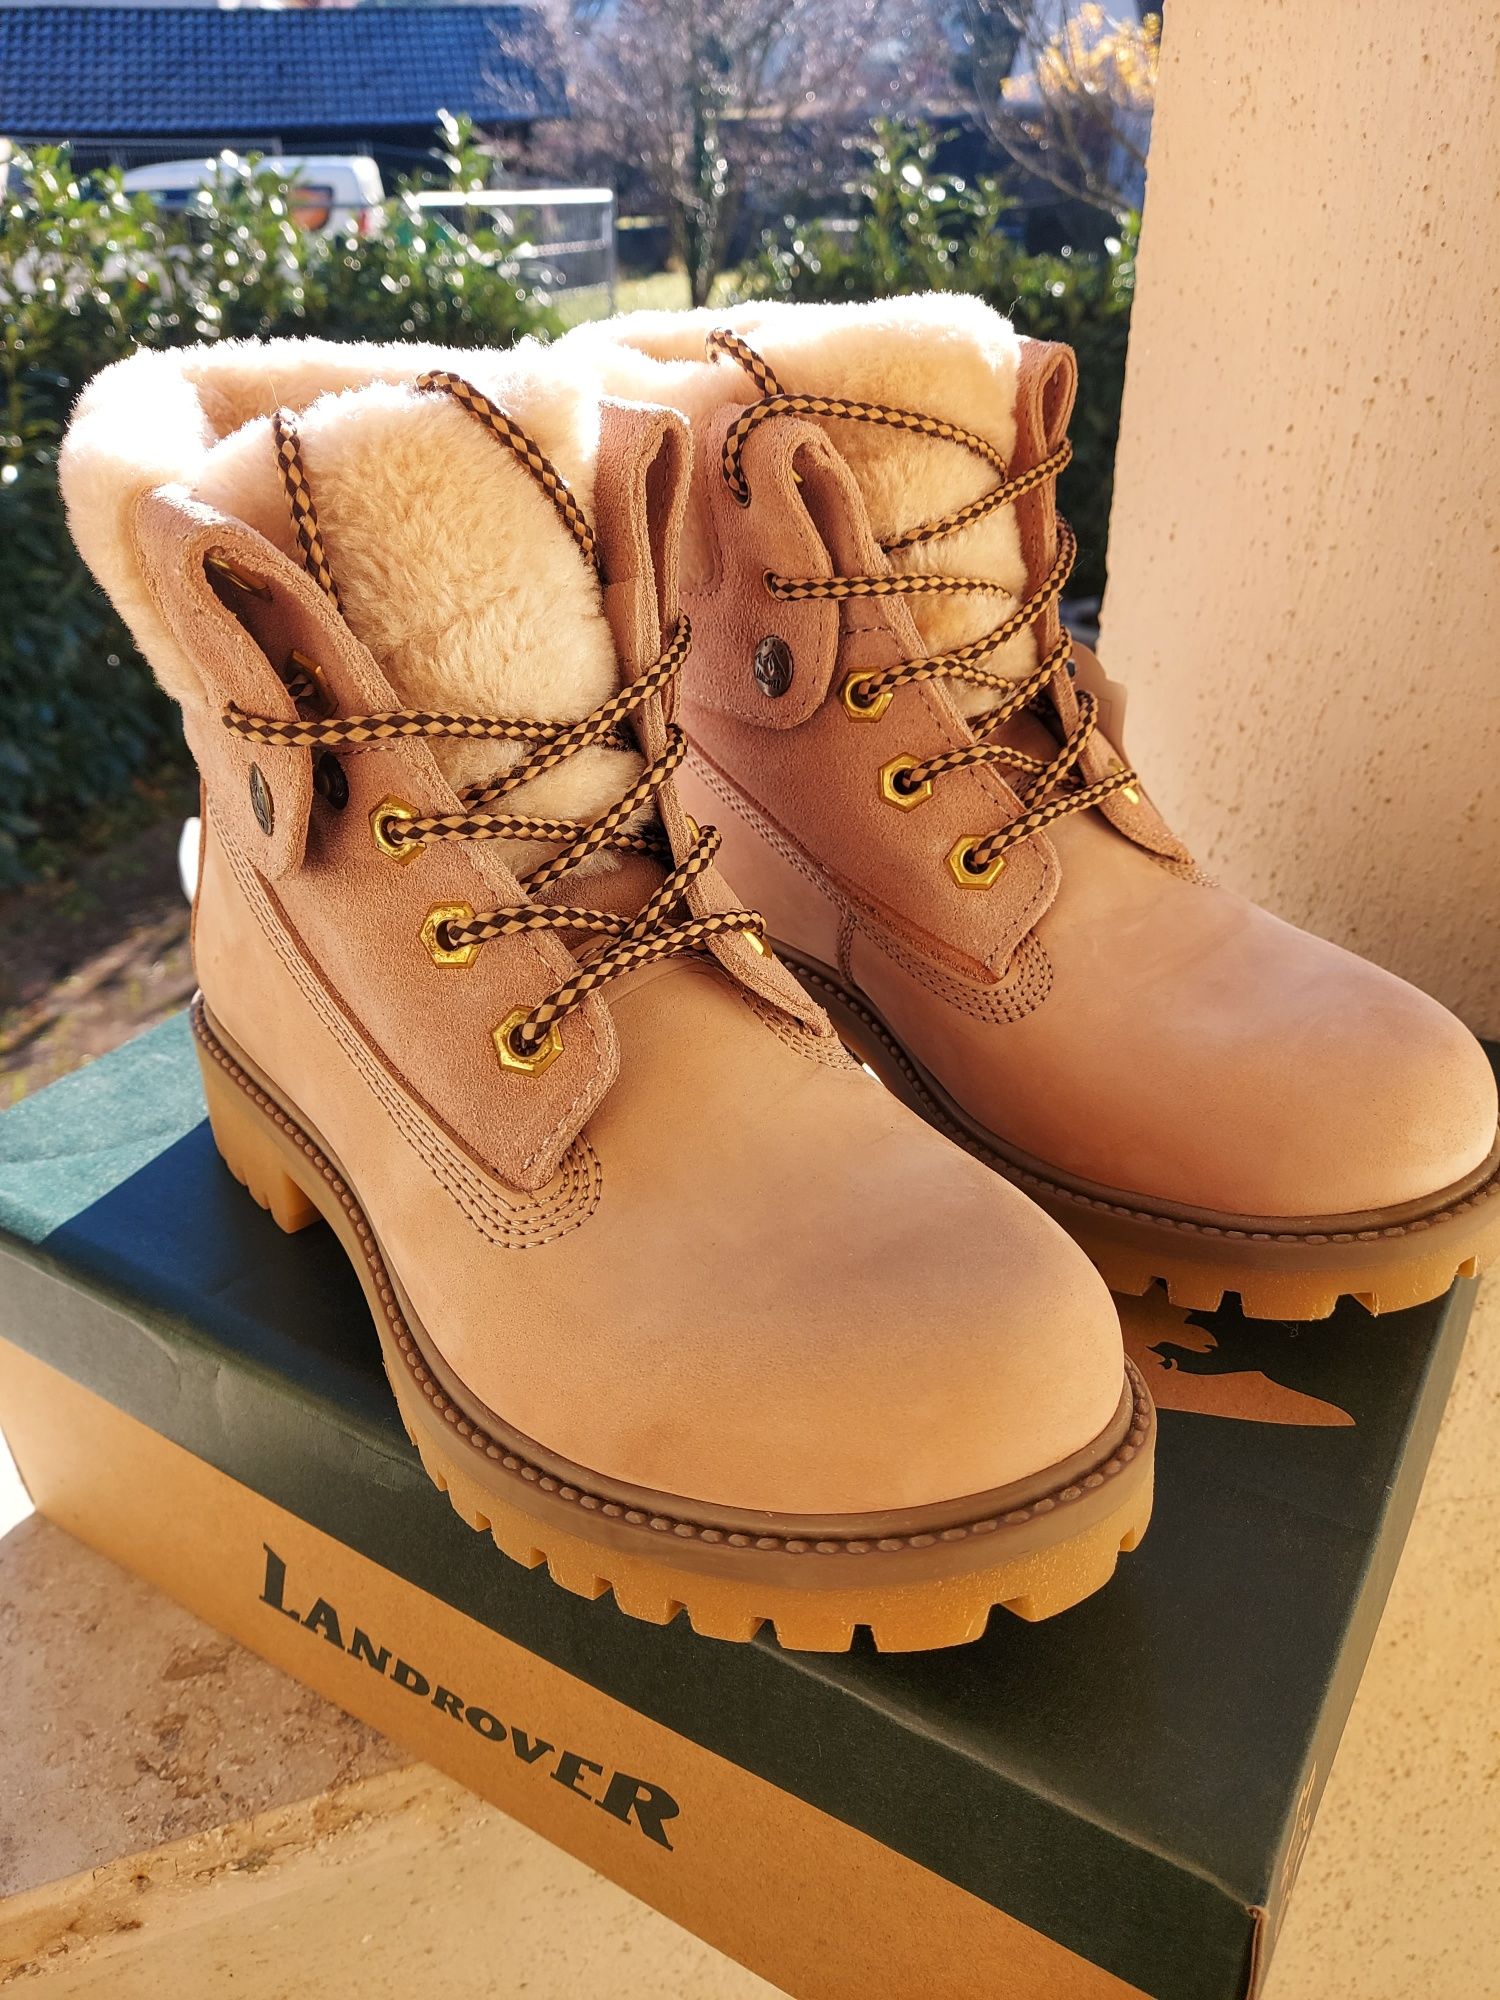 Фирменные зимние кожаные ботинки сапоги Landrover